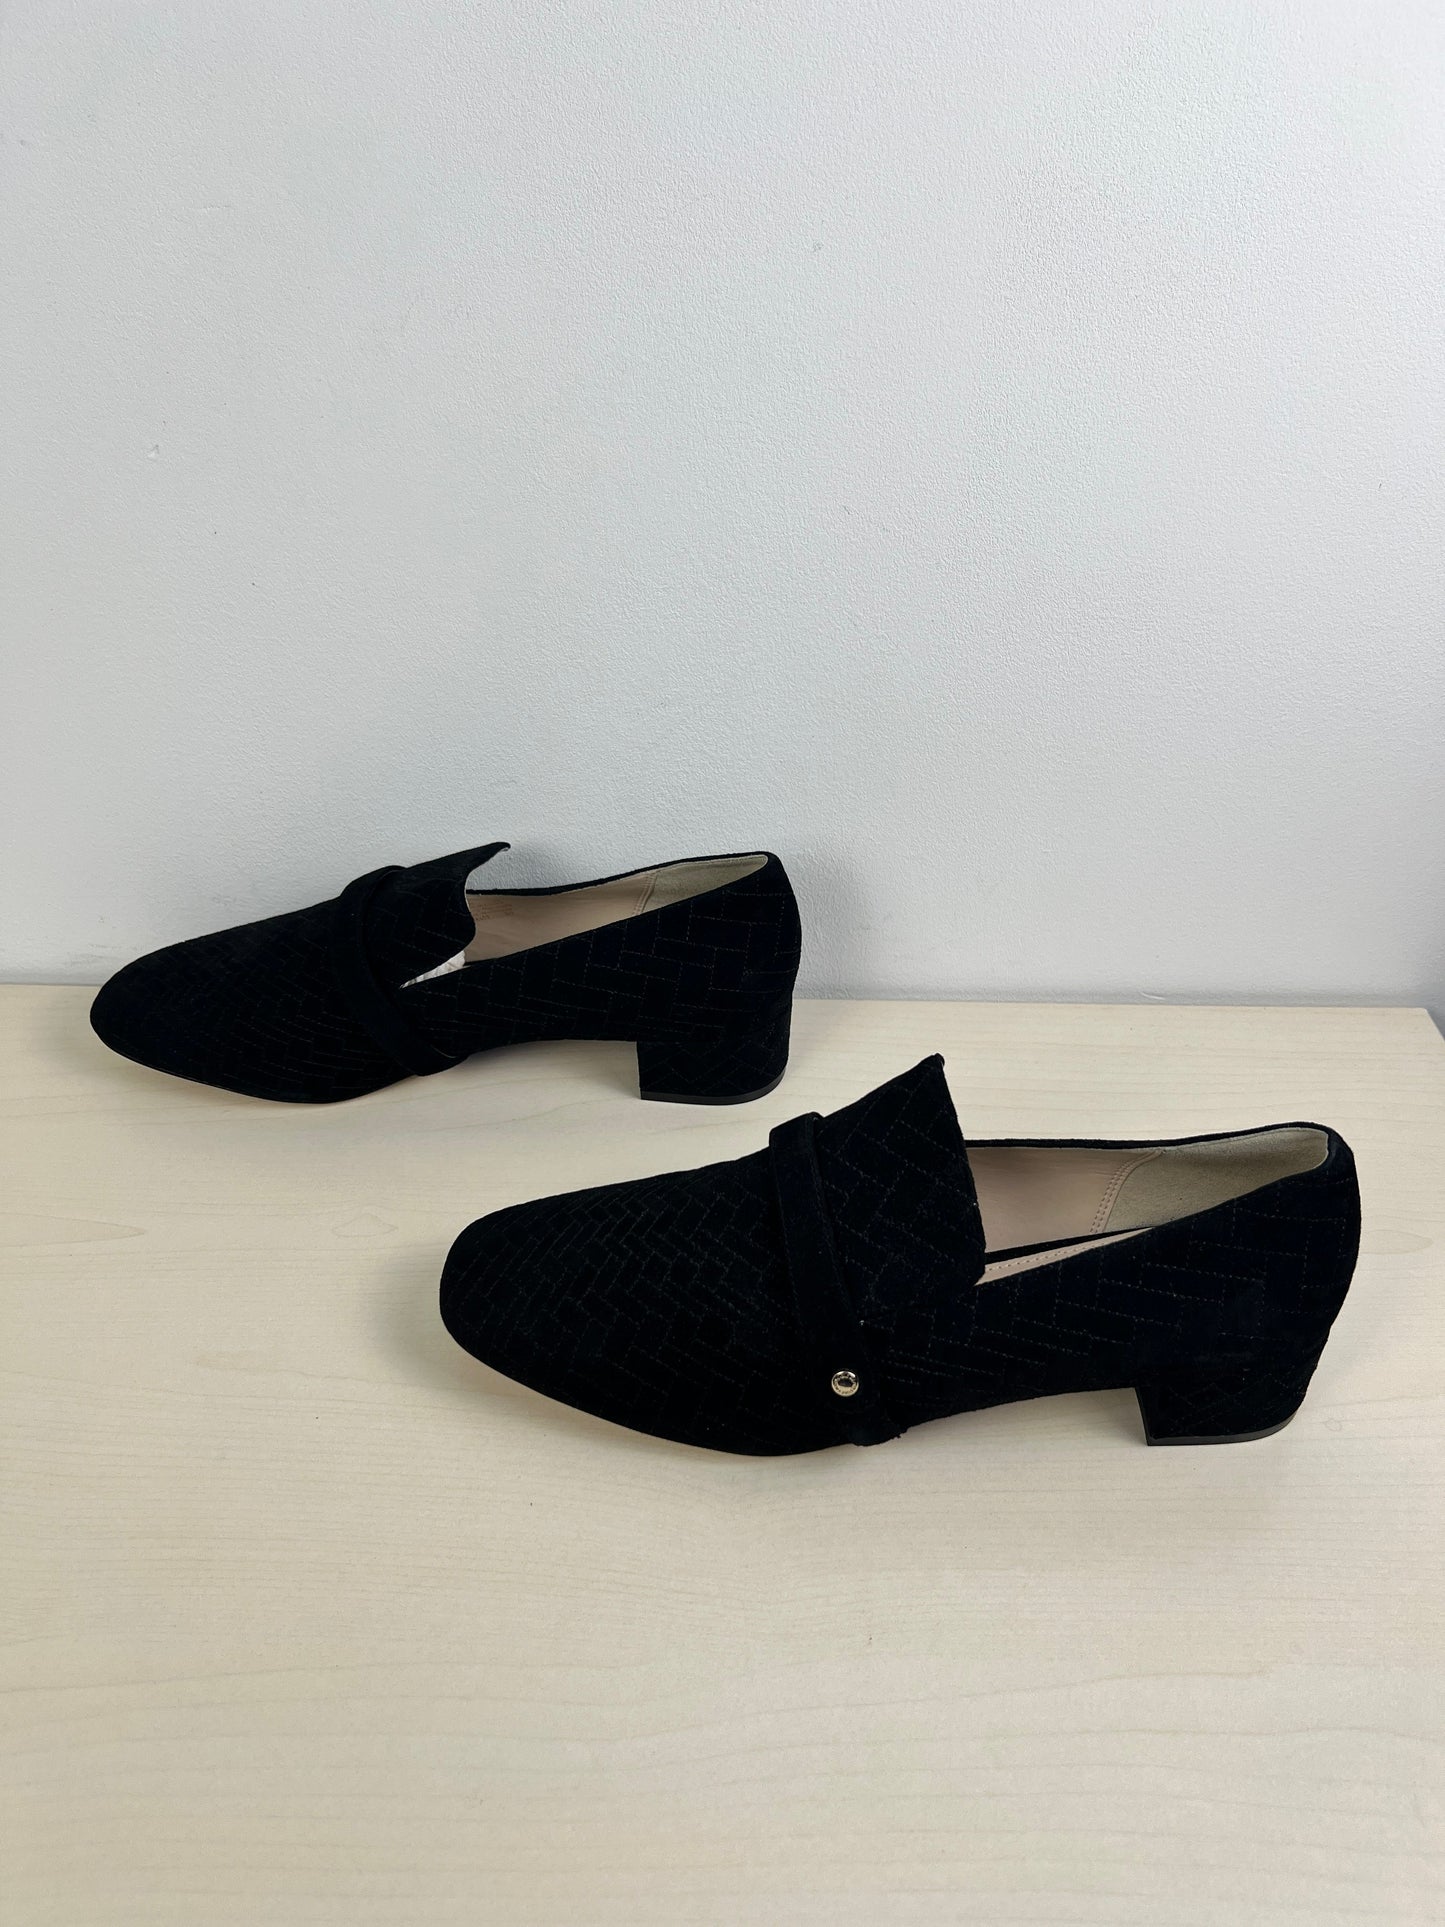 Black Shoes Heels Block Cole-haan, Size 9